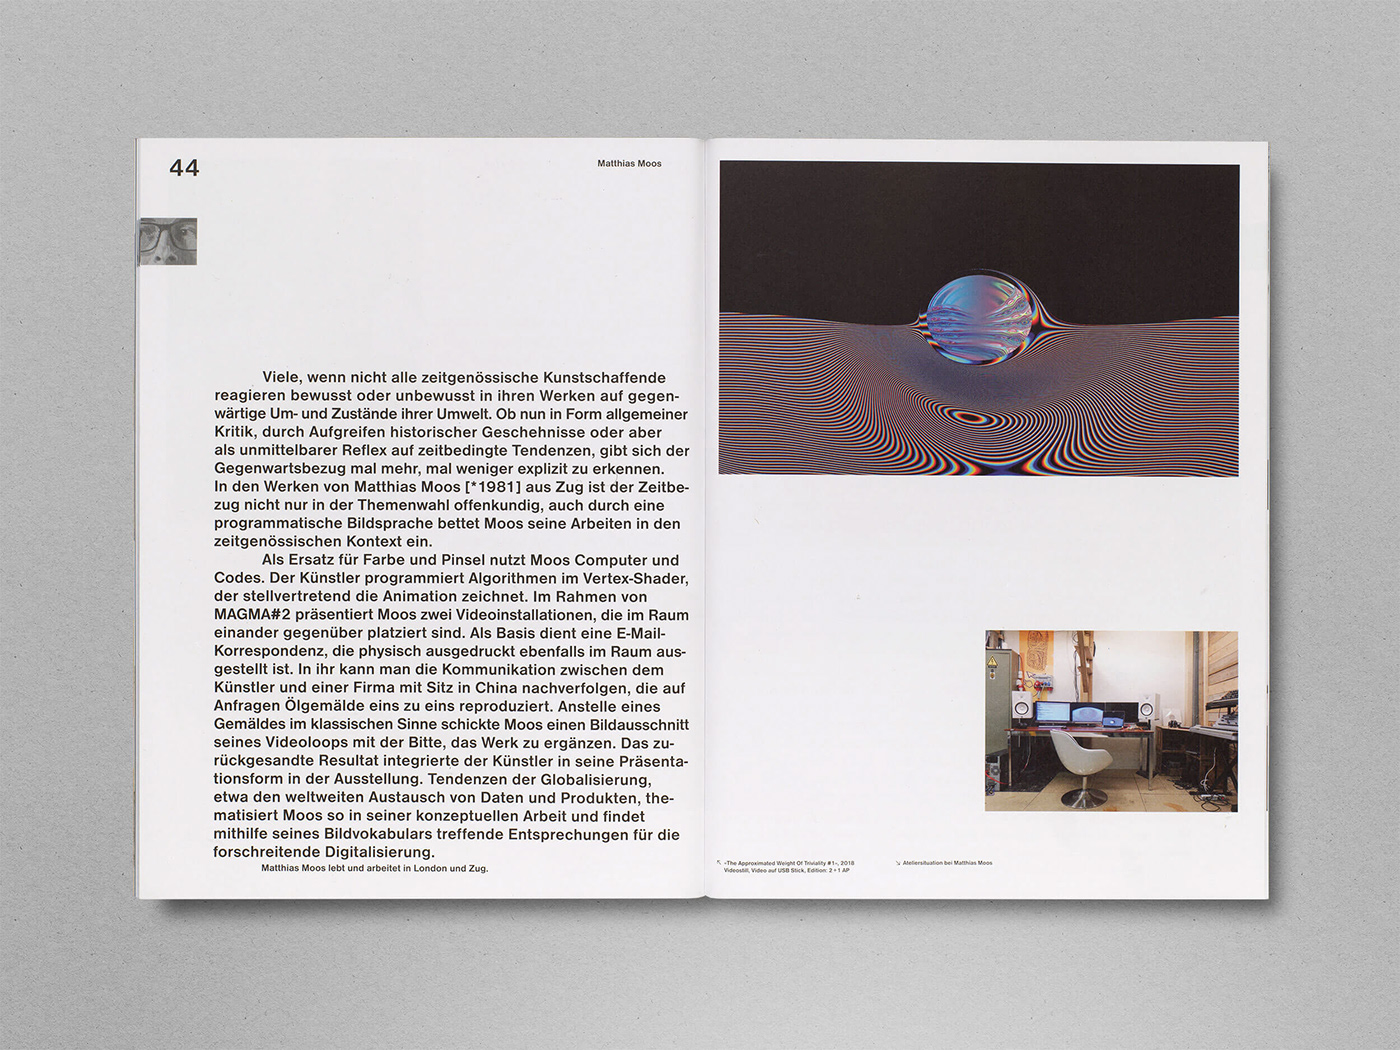 ausstellung book buchdesign editorialdesign katalog magma printdesign Triennale typo